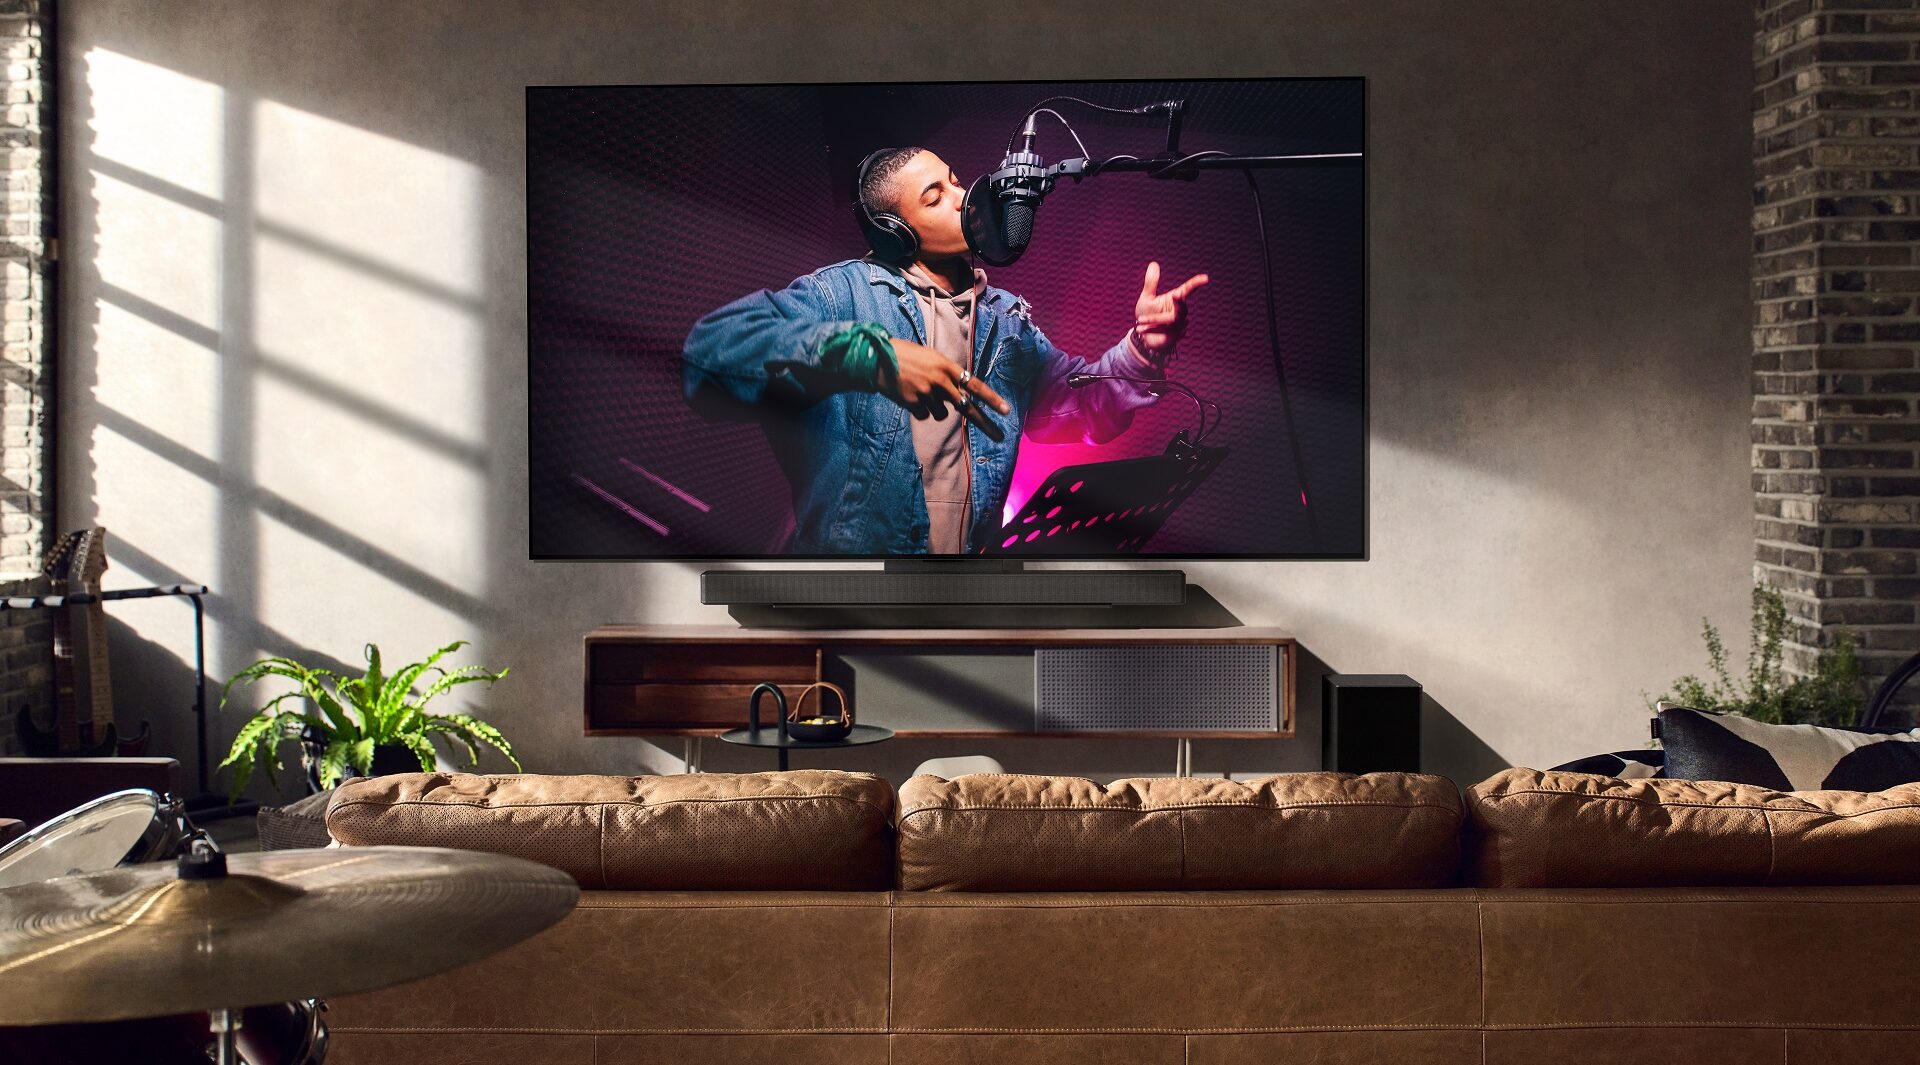 LG oznámilo uvedení nových OLED televizorů na český trh